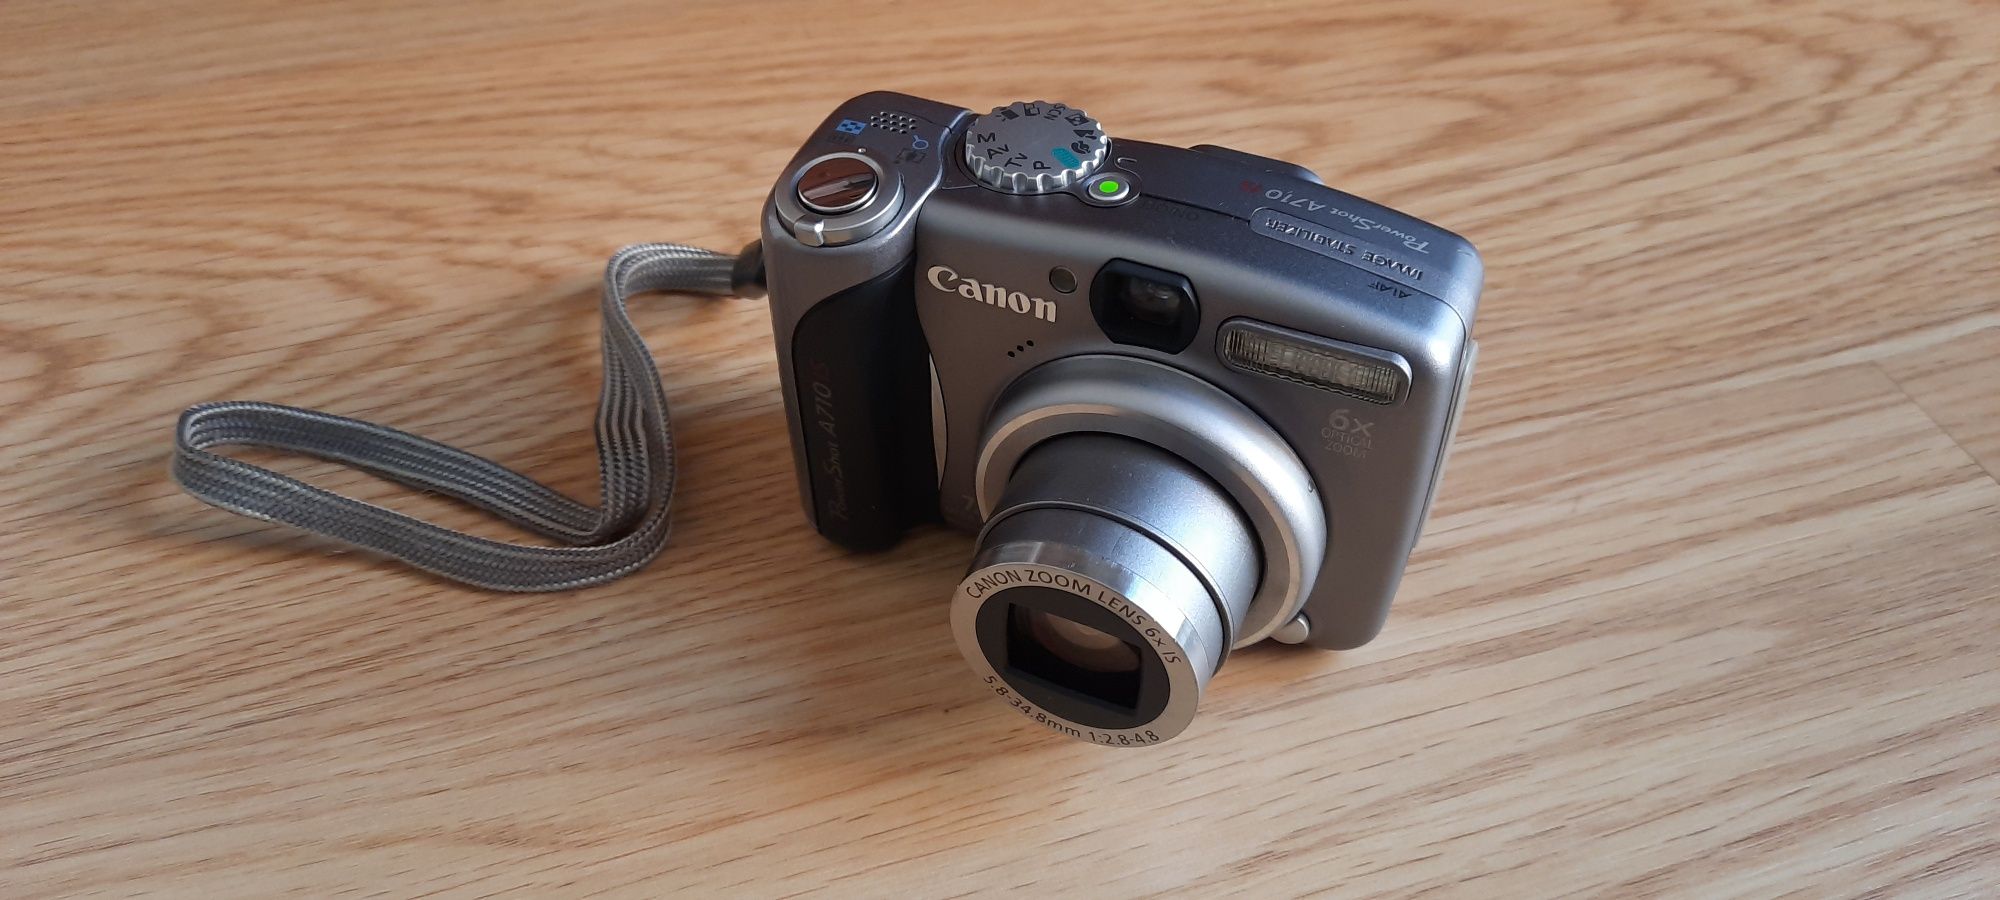 Máquina fotográfica digital Canon a710